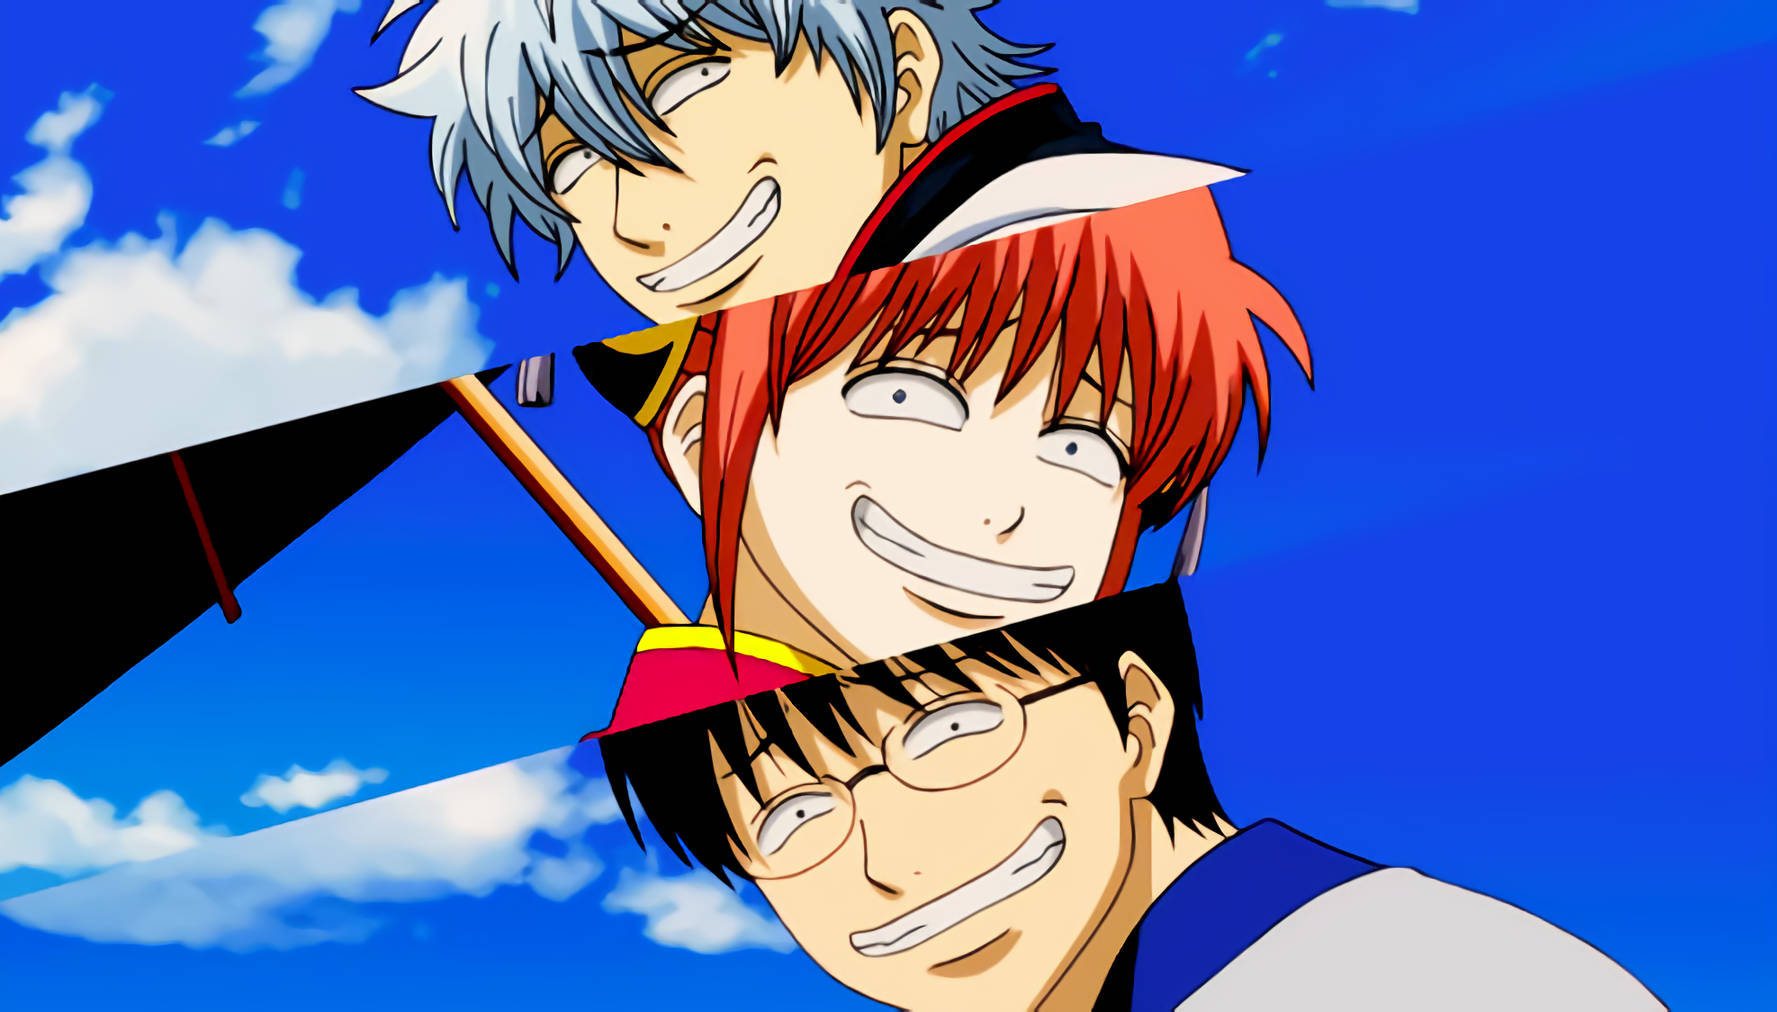 Gintama Funny Anime Background